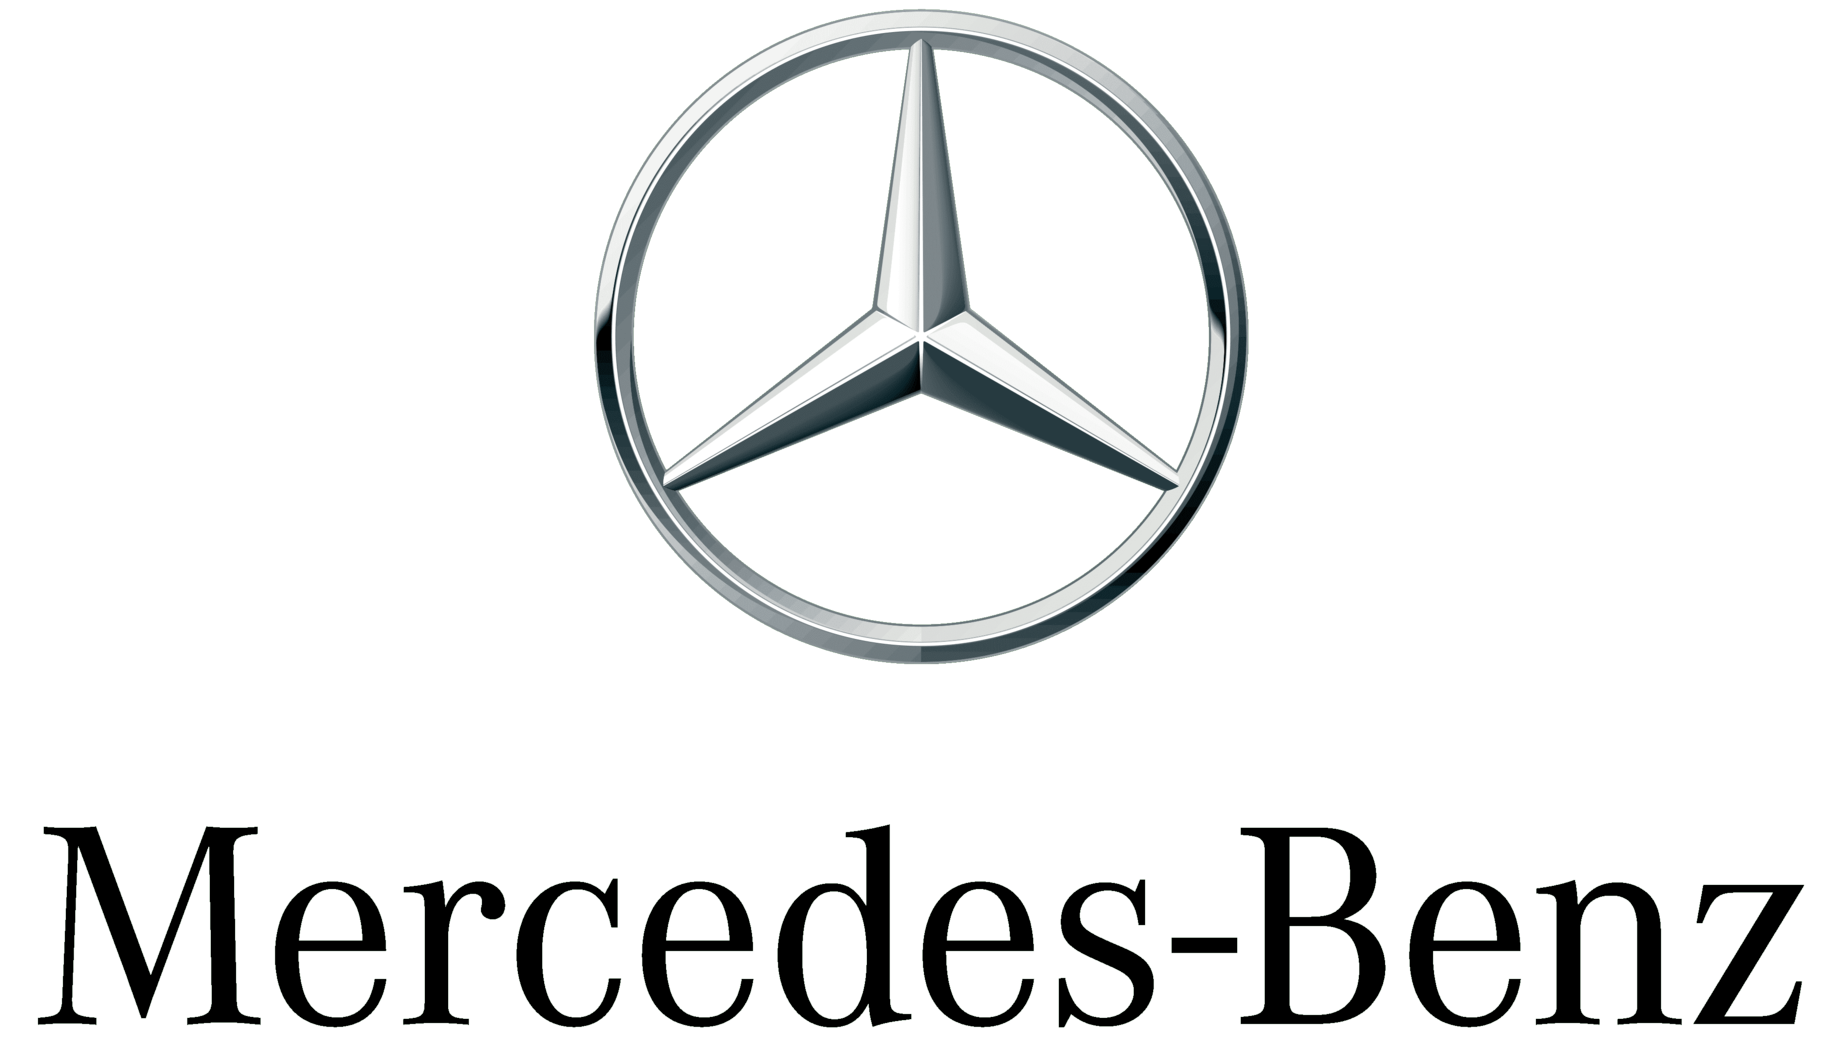 Mercedes benz symbol